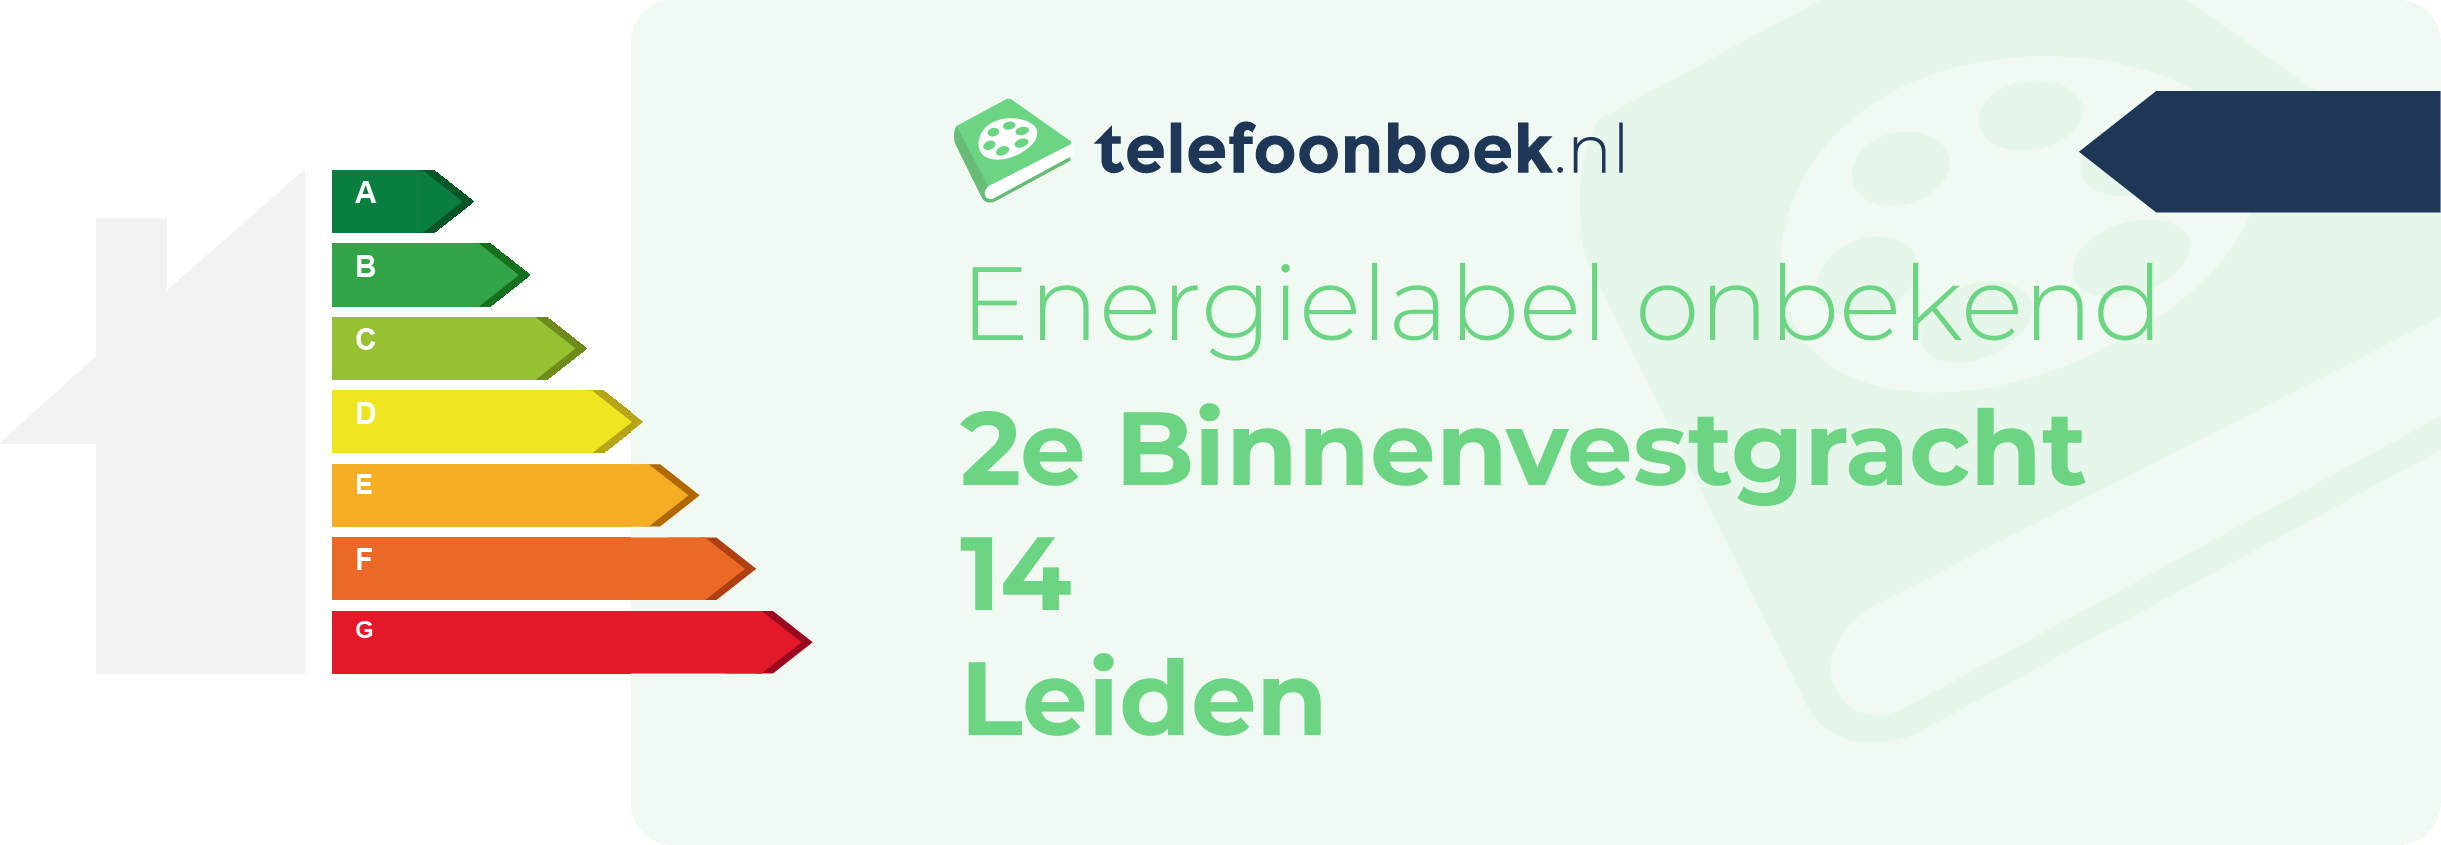 Energielabel 2e Binnenvestgracht 14 Leiden